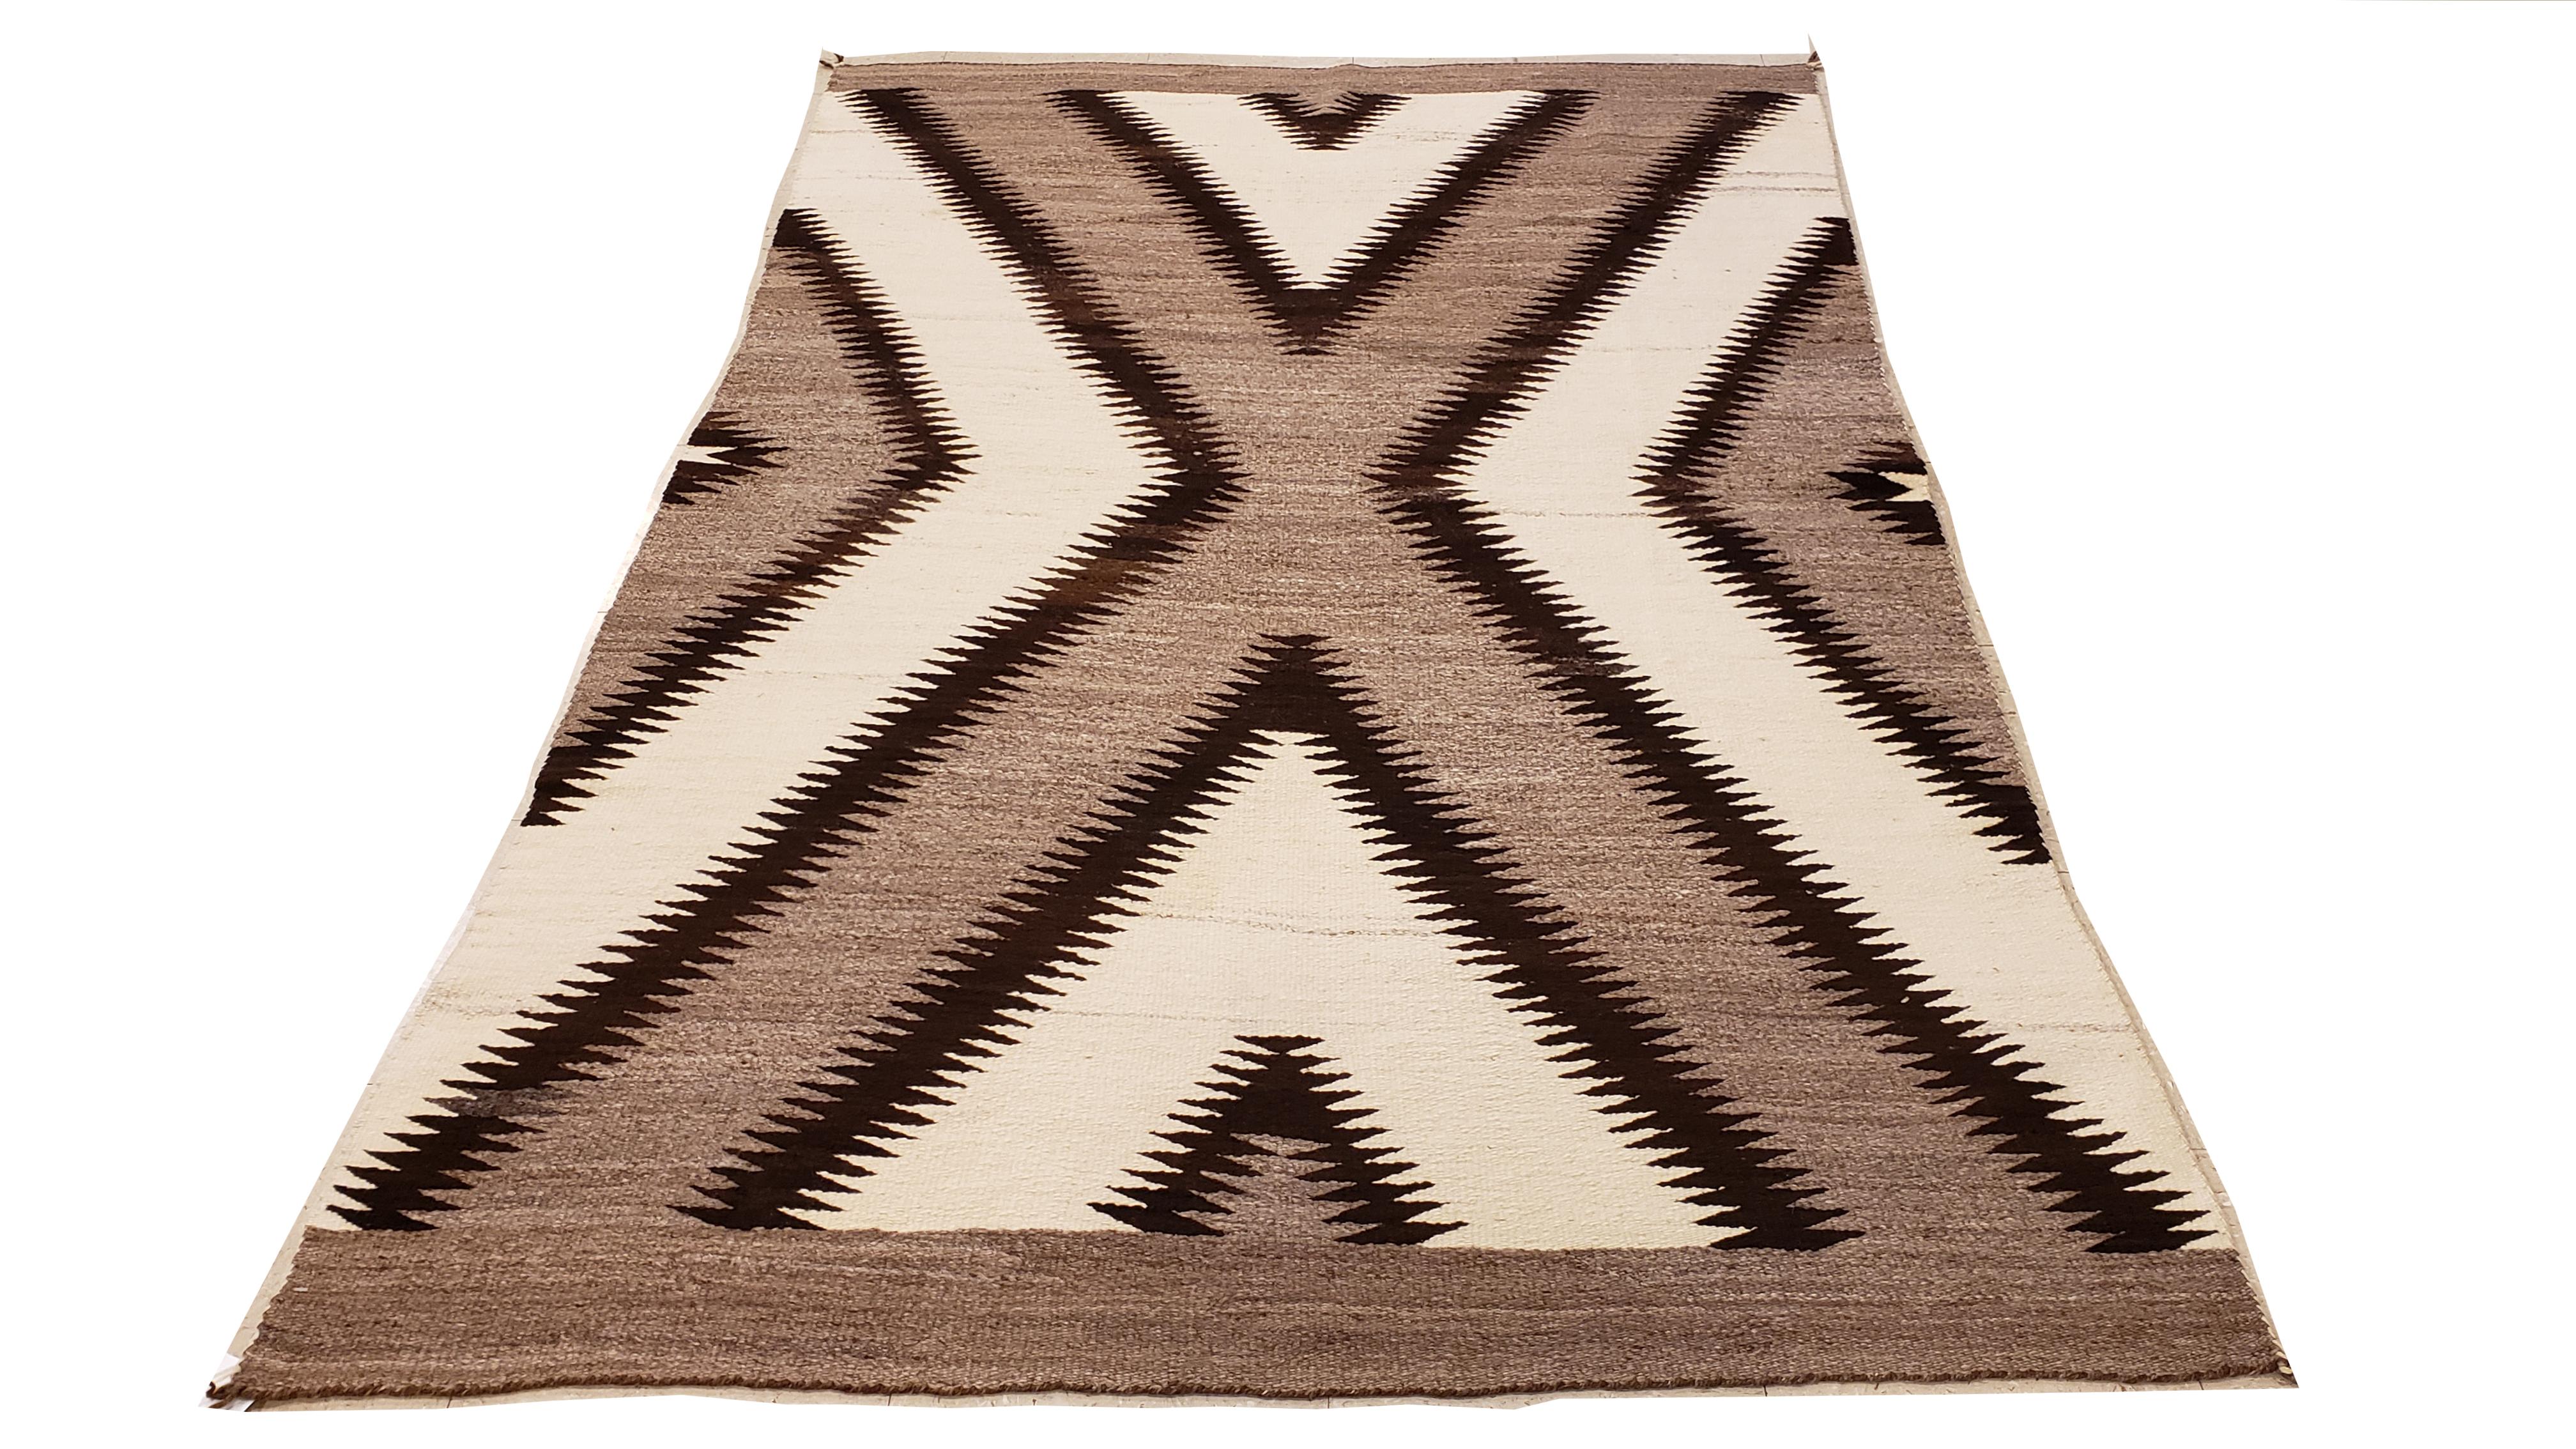 Antique Navajo Rug, Handmade Wool Oriental Rug, Gray, Ivory and Dark Brown 3